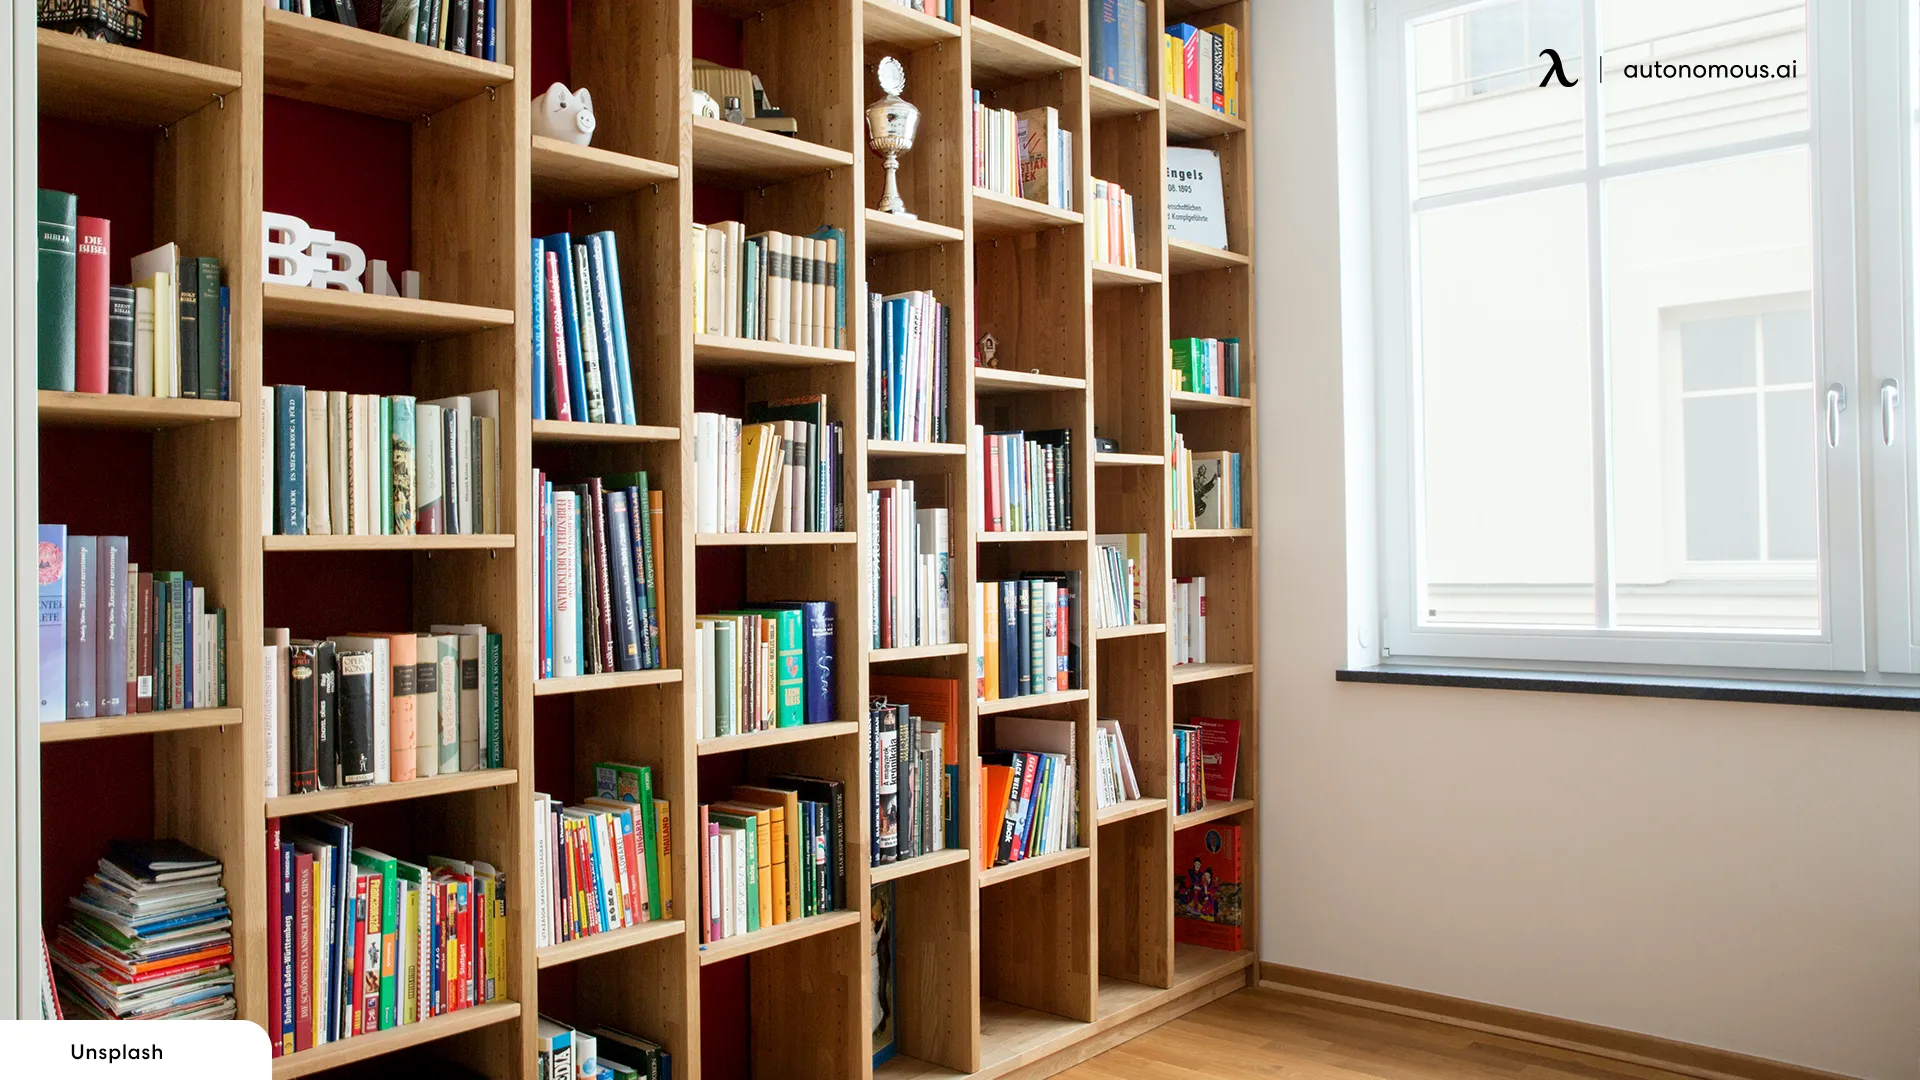 Add a Bookshelf modern office decor